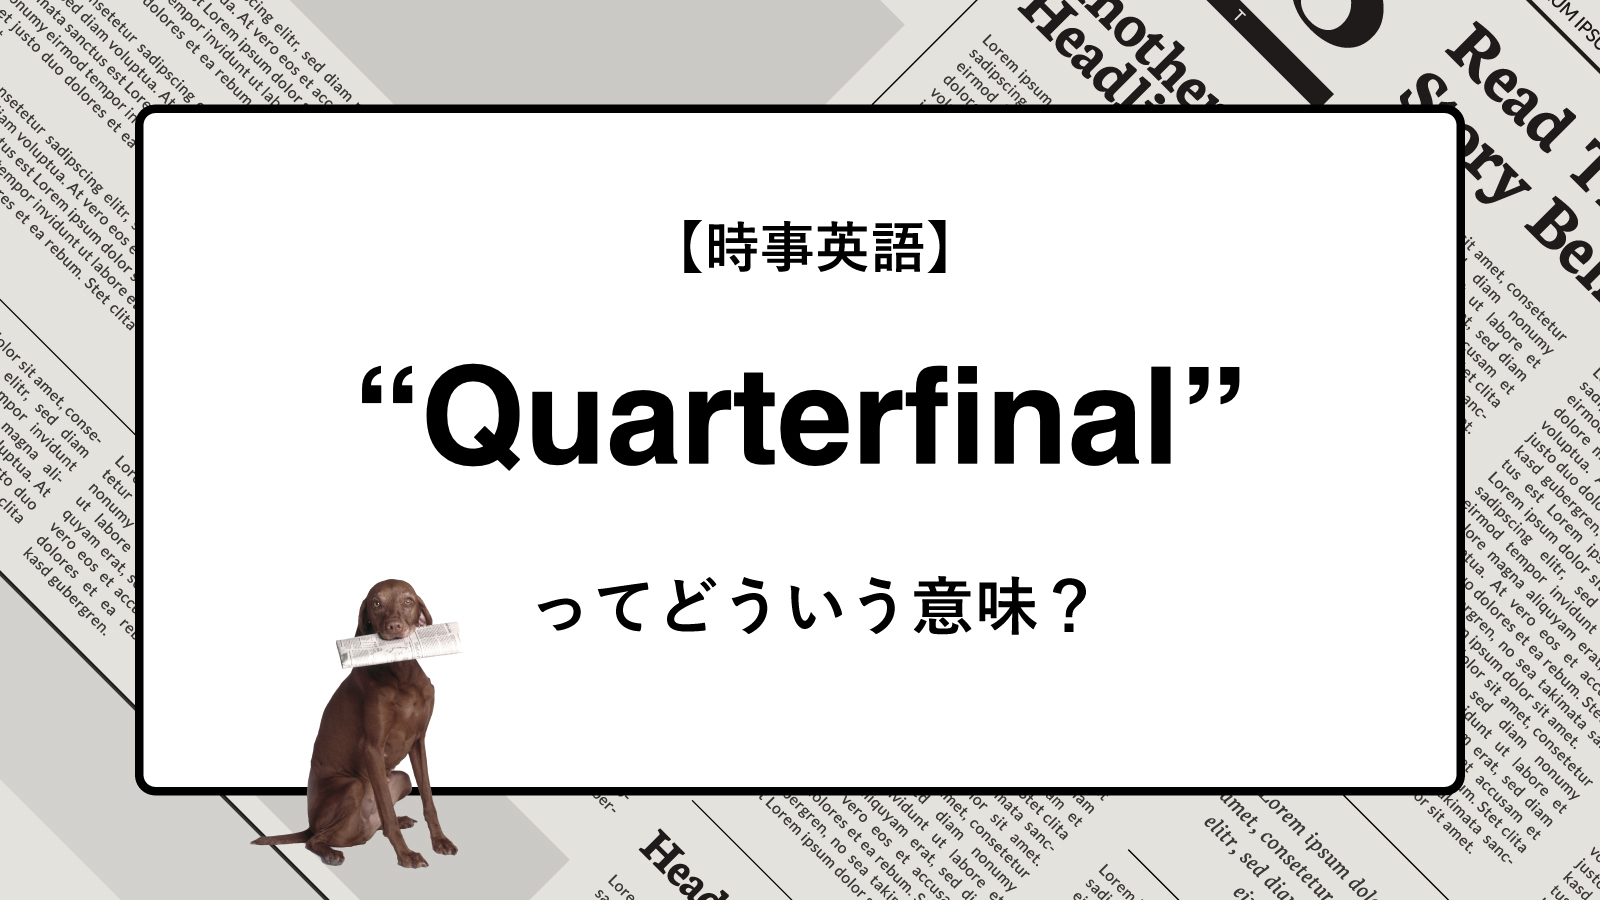 【時事英語】“Quaterfinal” ってどういう意味？ | ニュースの「キーワード」で語彙力を身につける